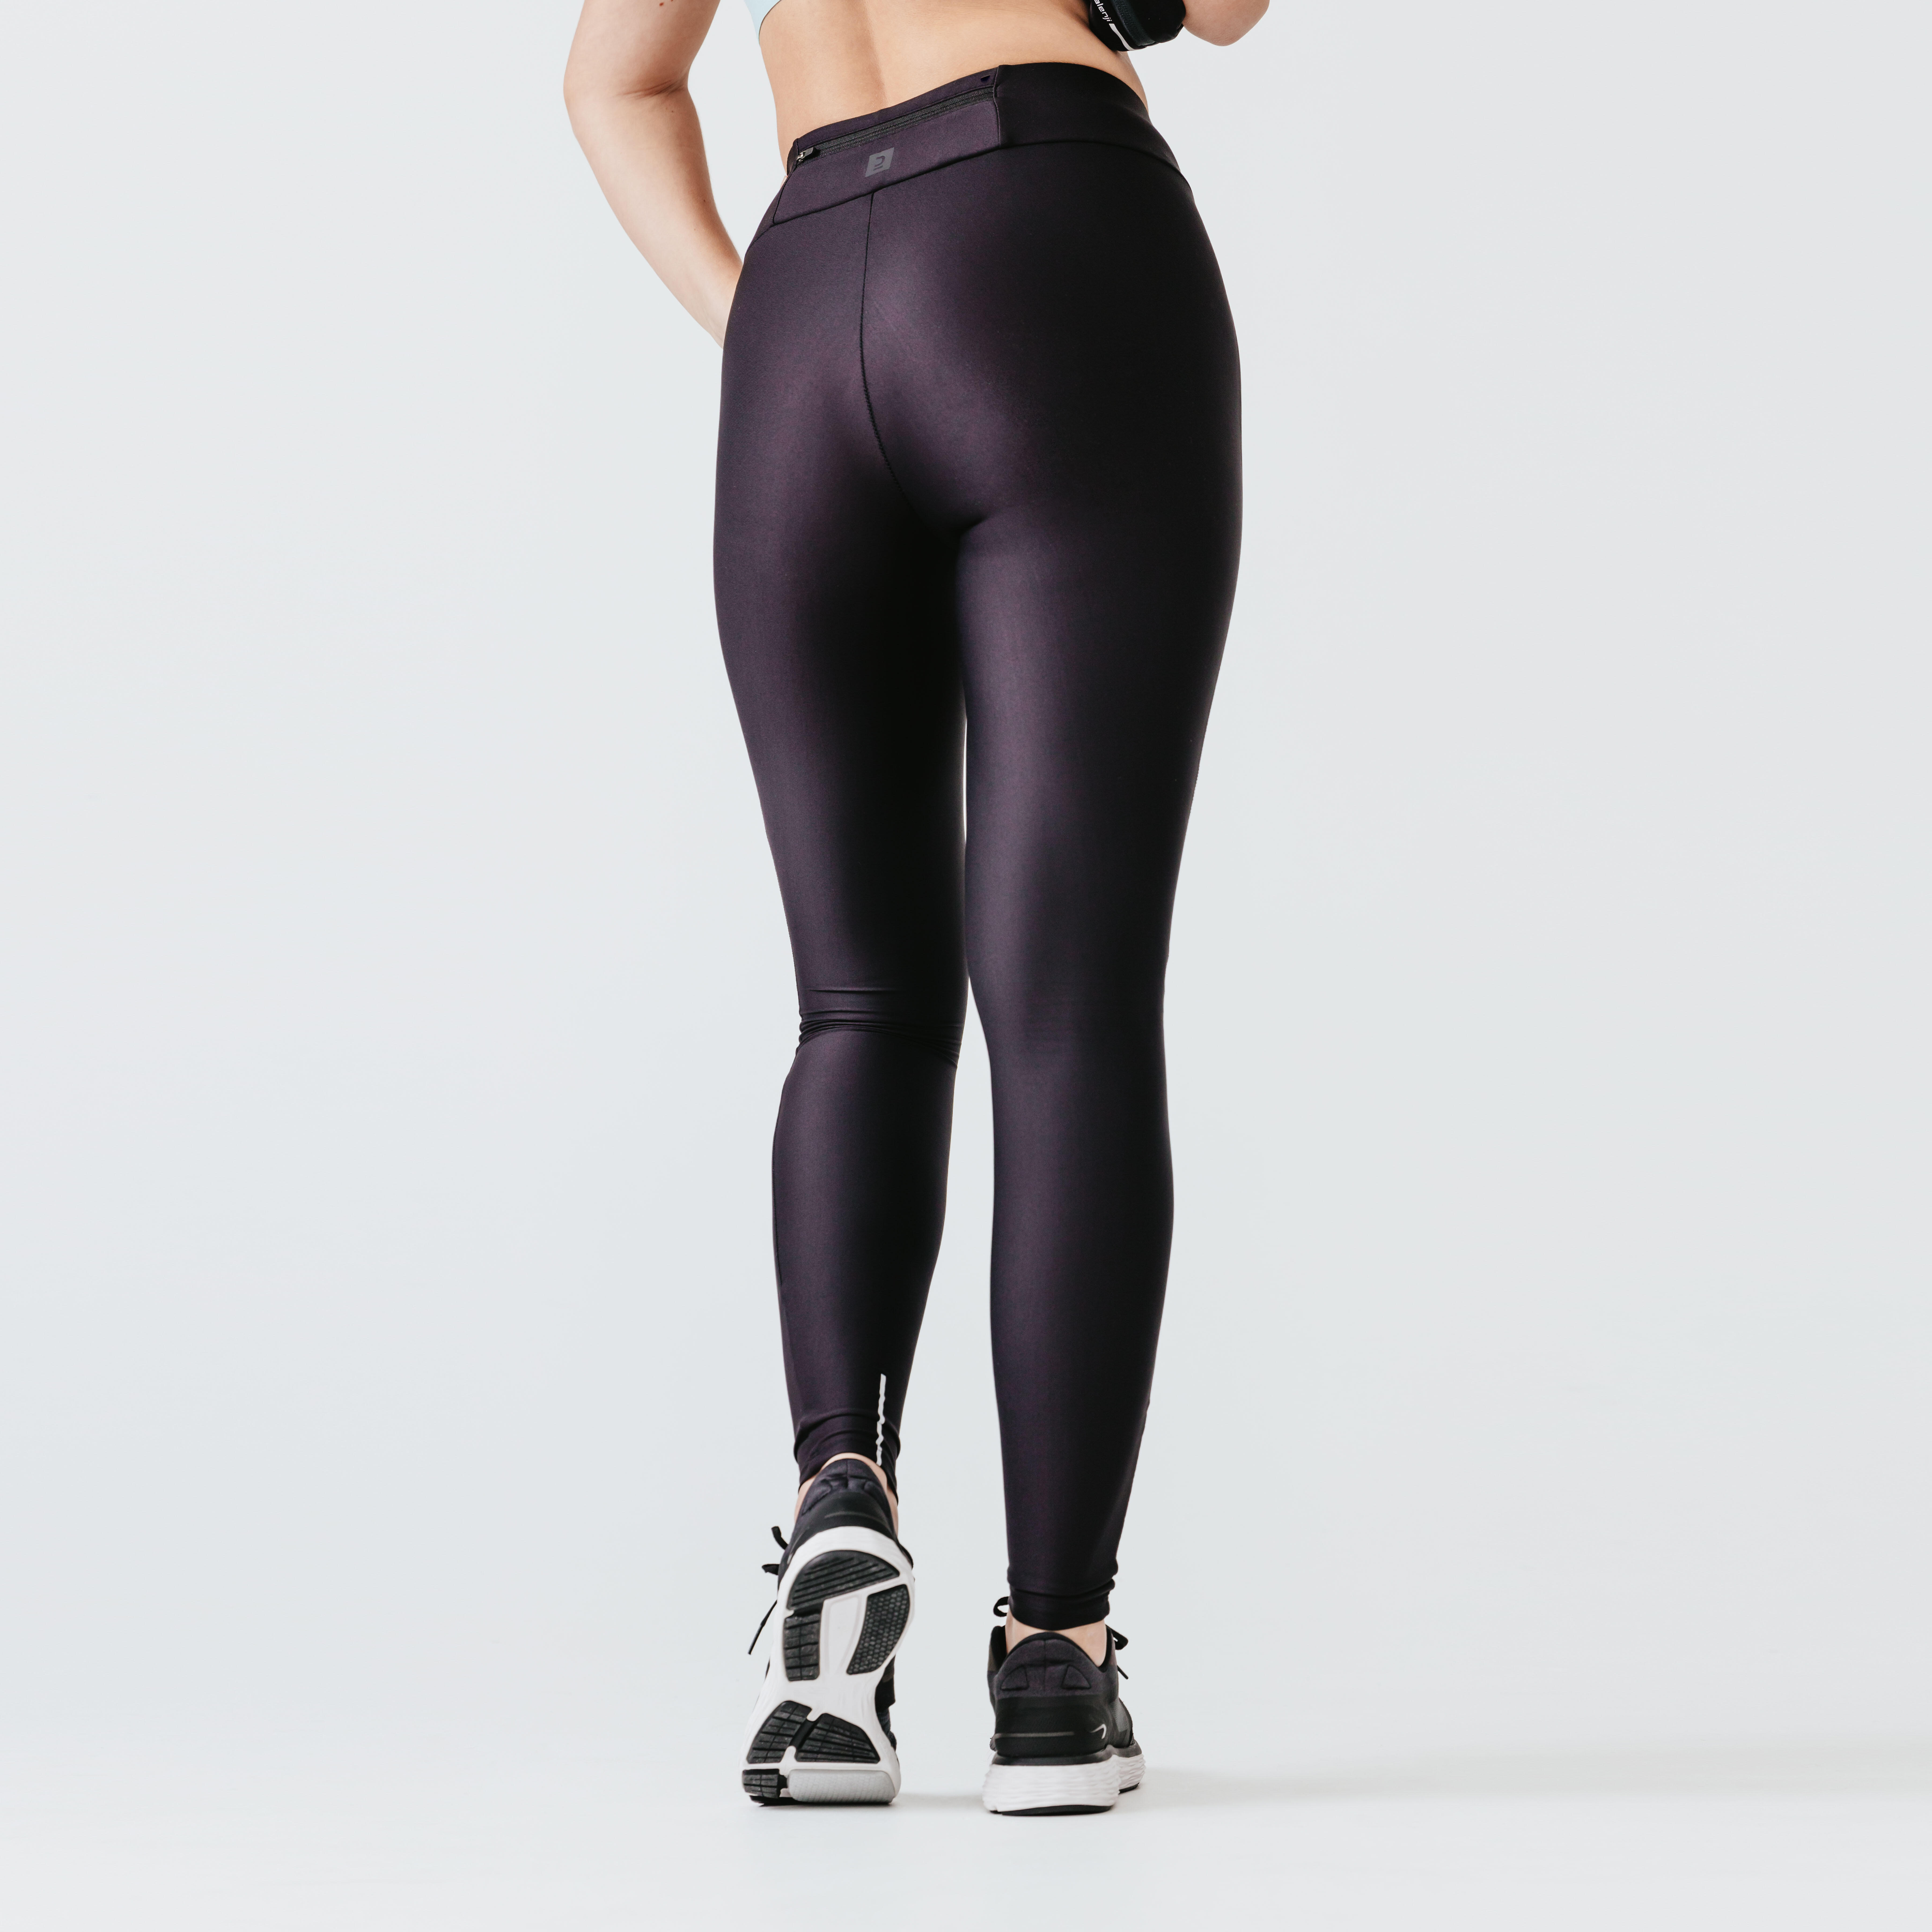 Women long running leggings Dry - black